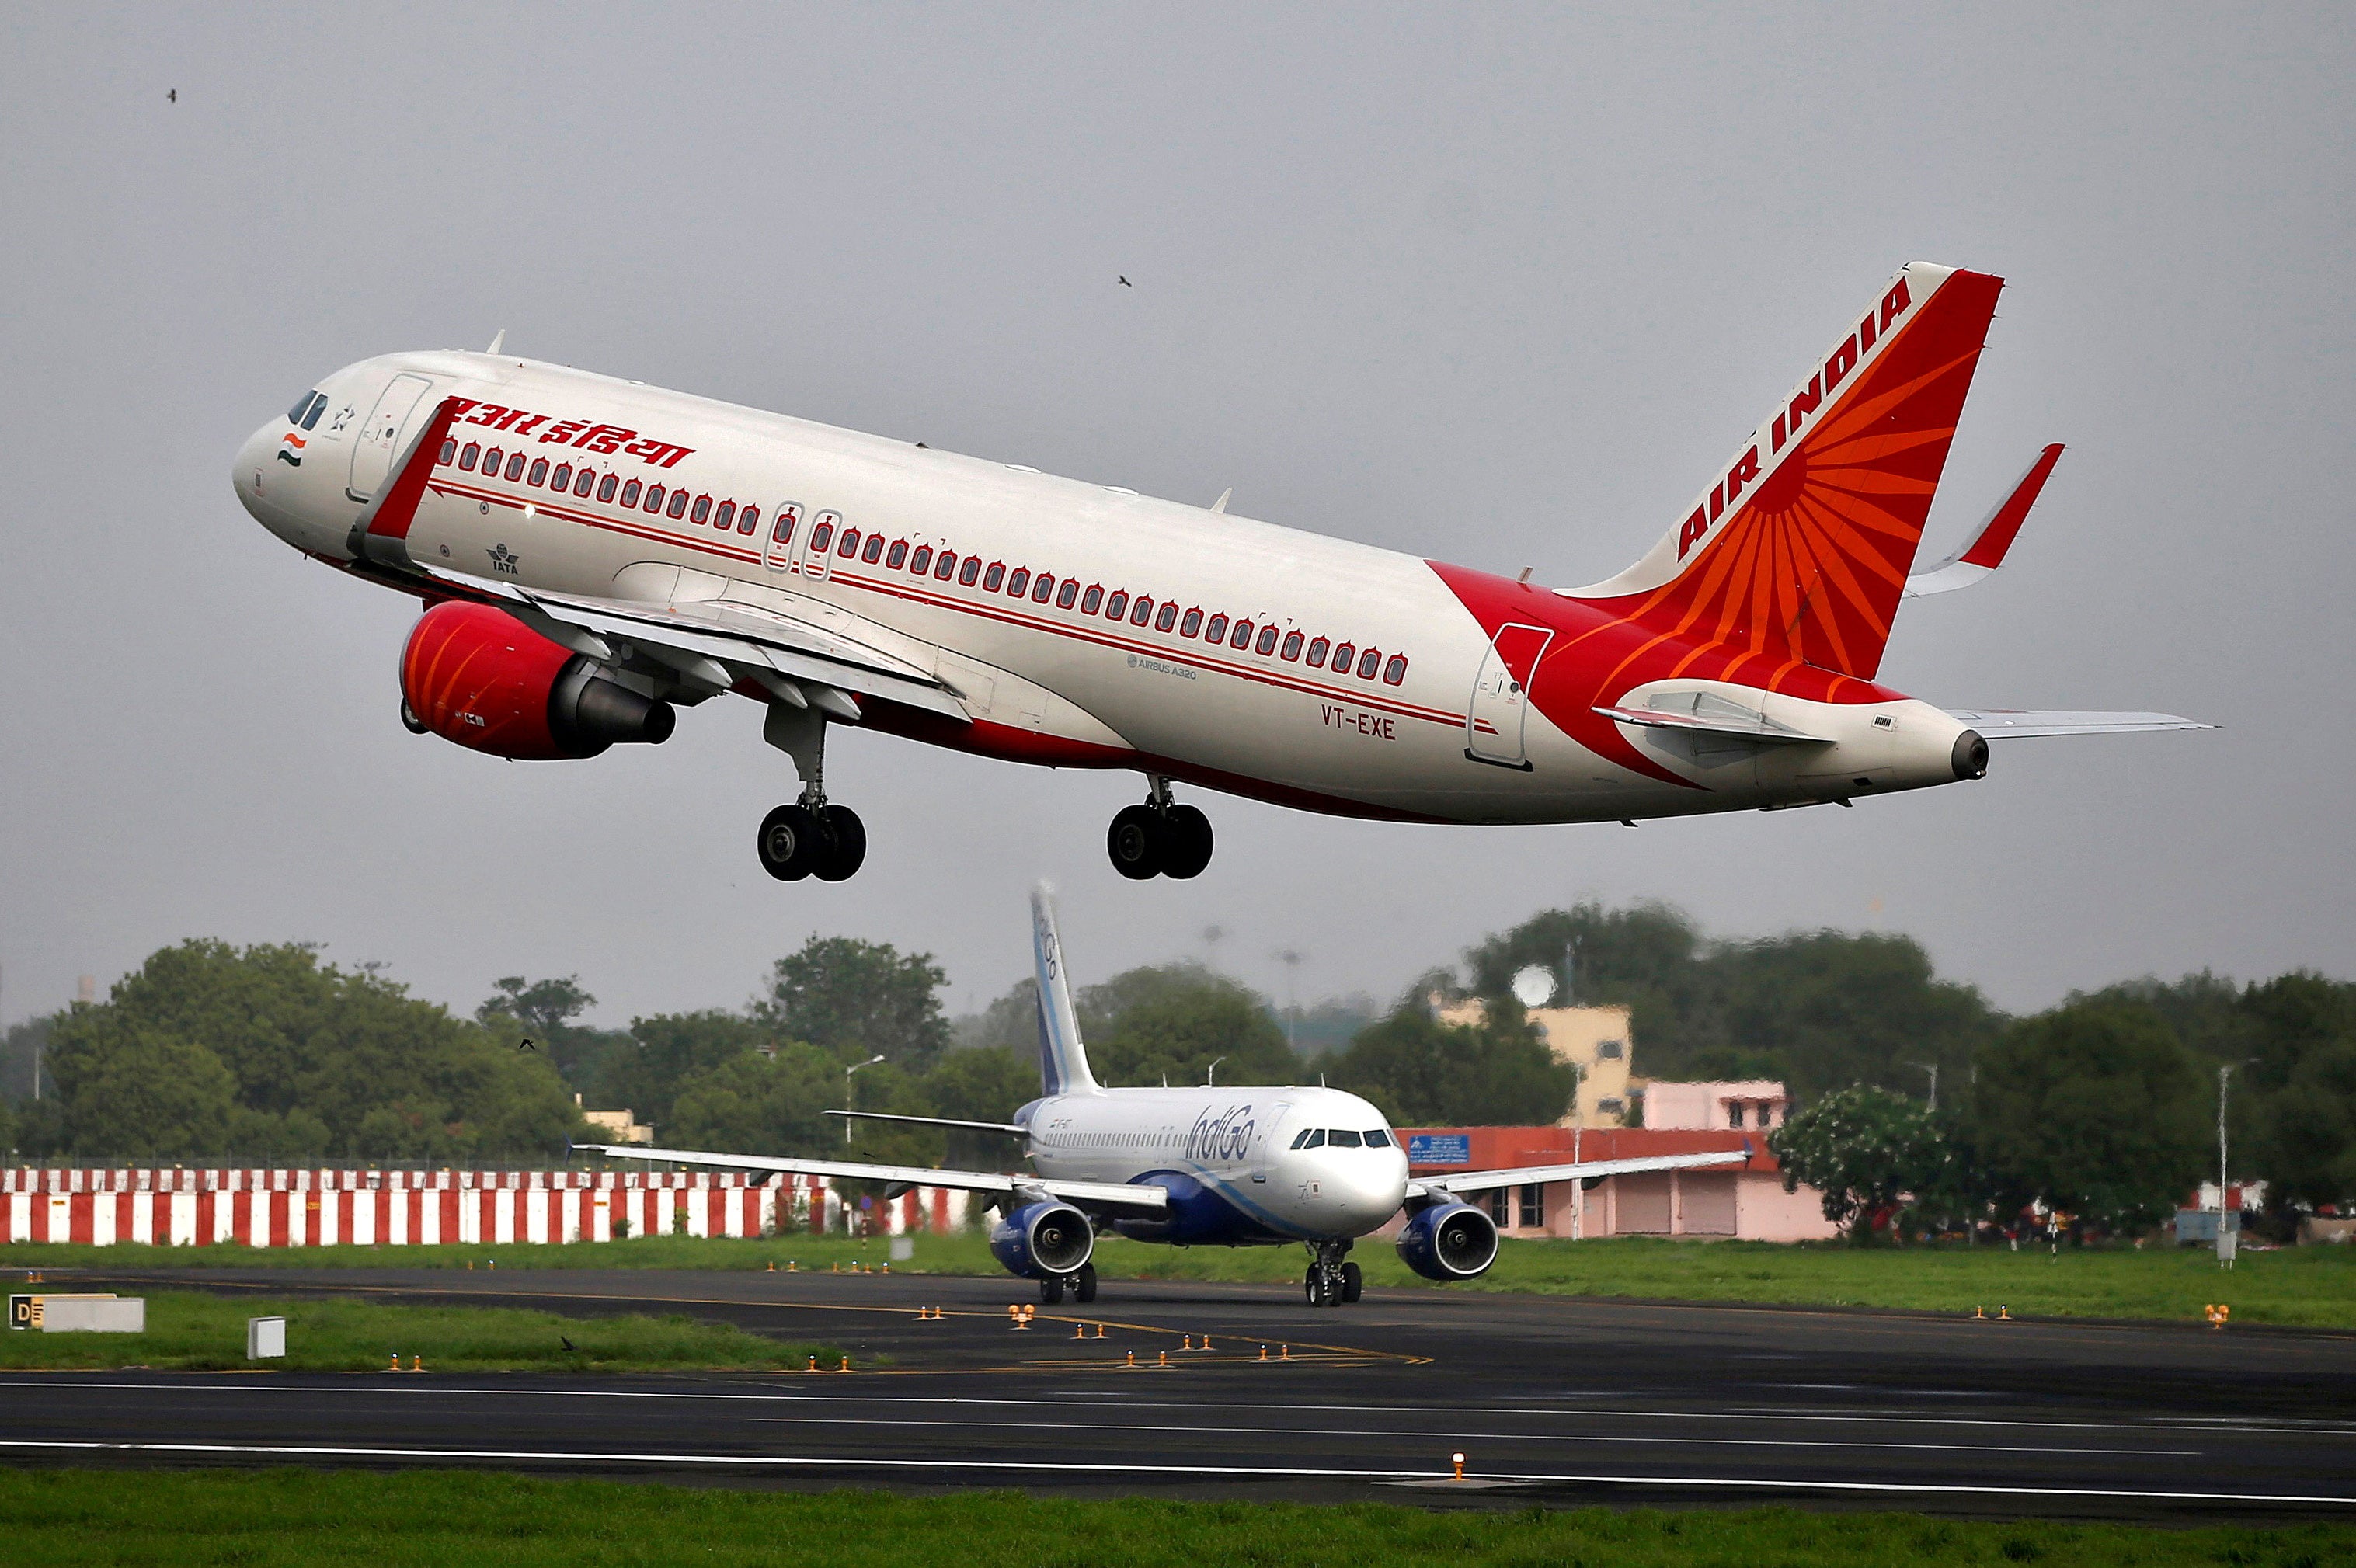 An Air India Airbus A320 aircraft takes off